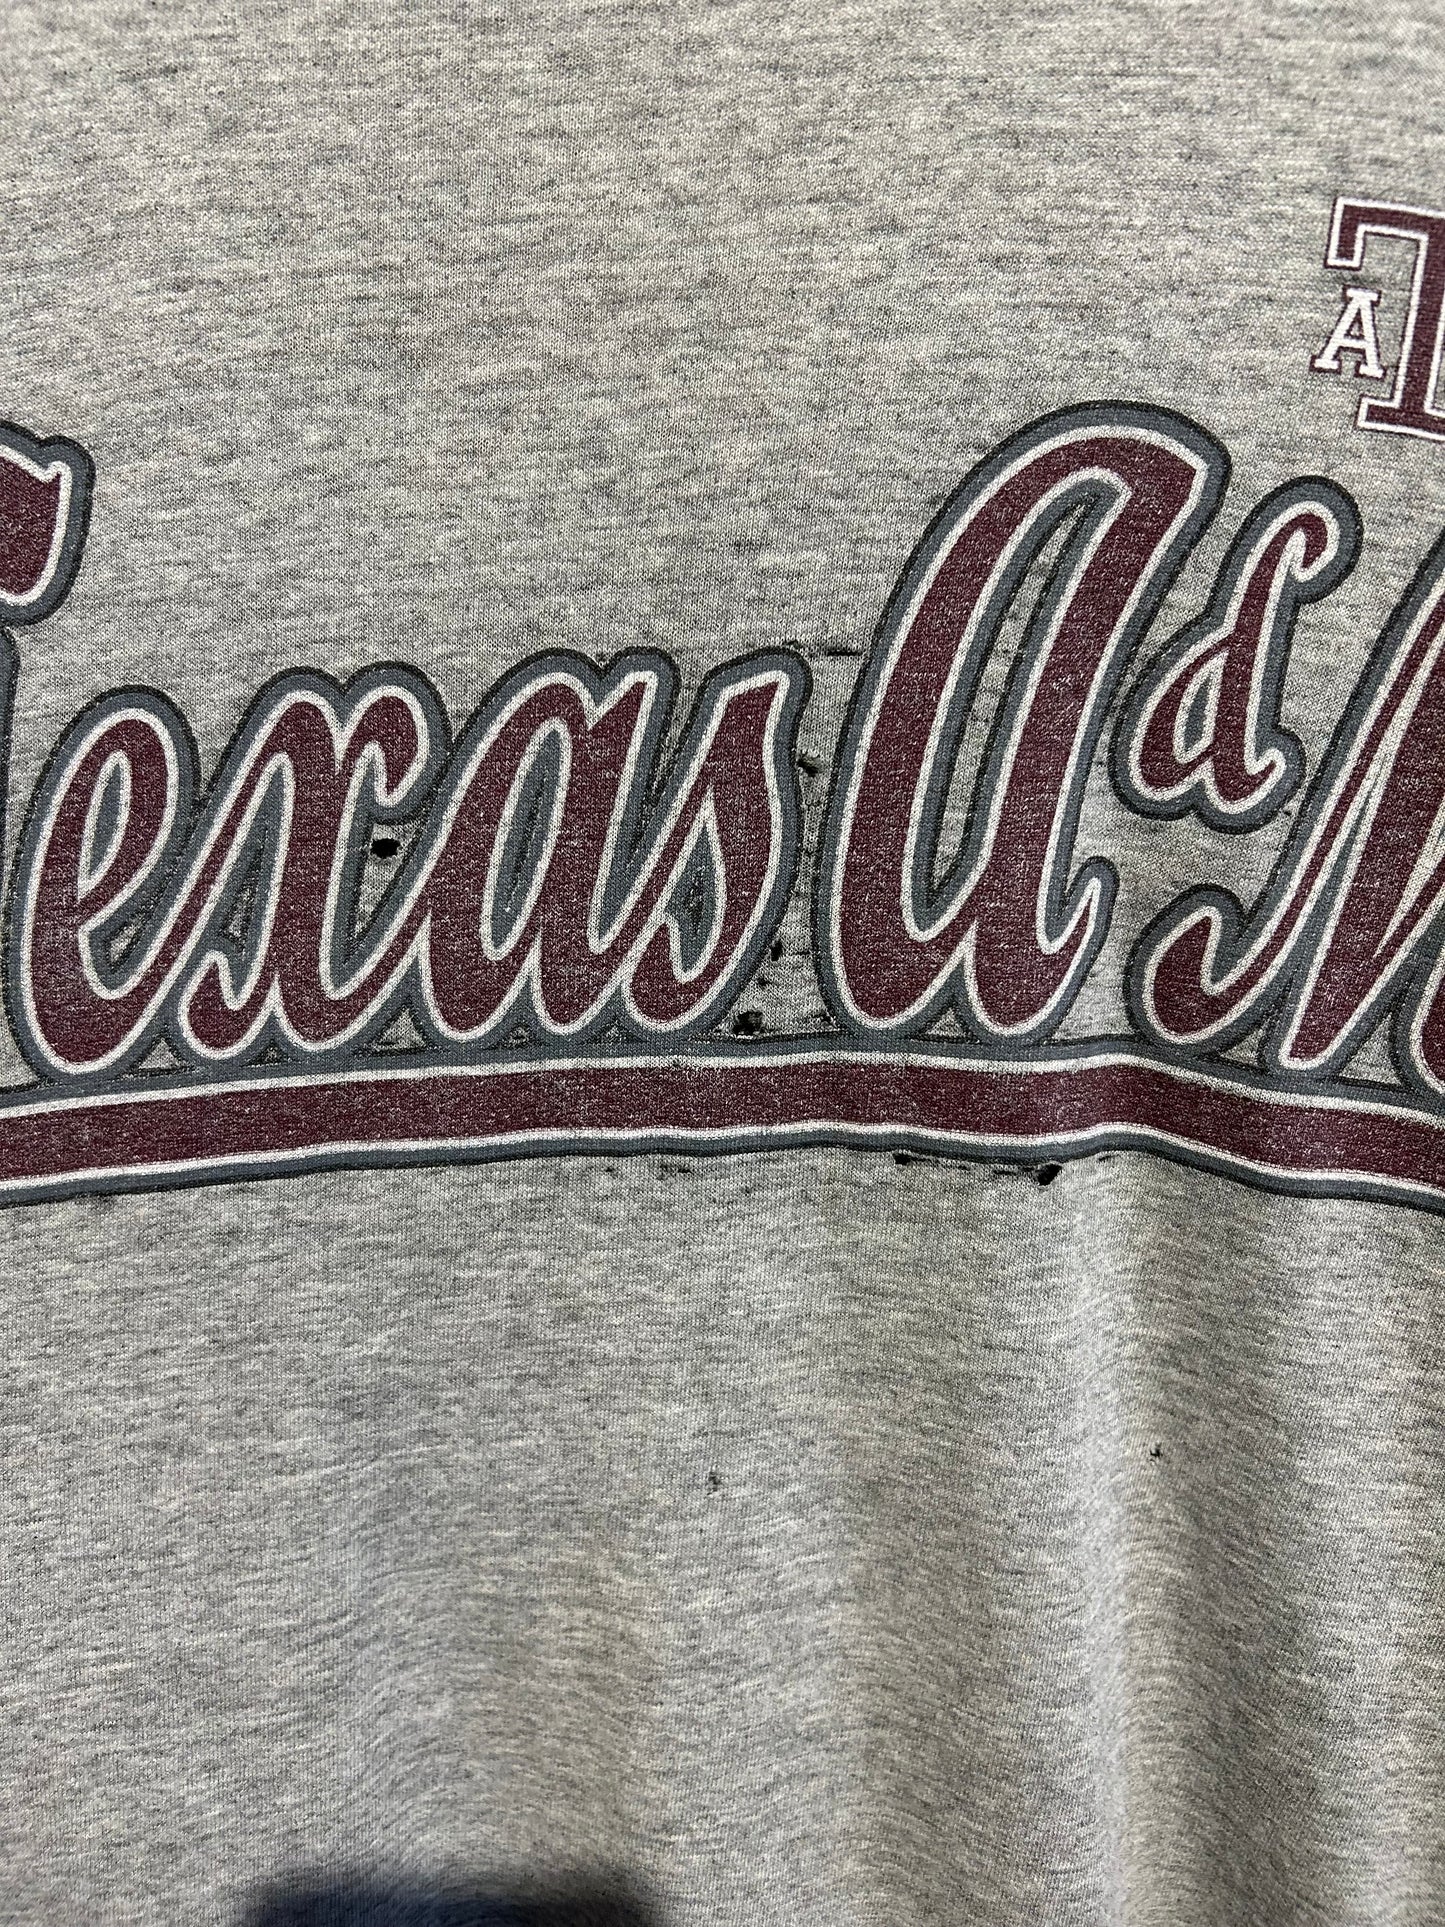 90s Texas A&M Starter T-Shirt. Size XL